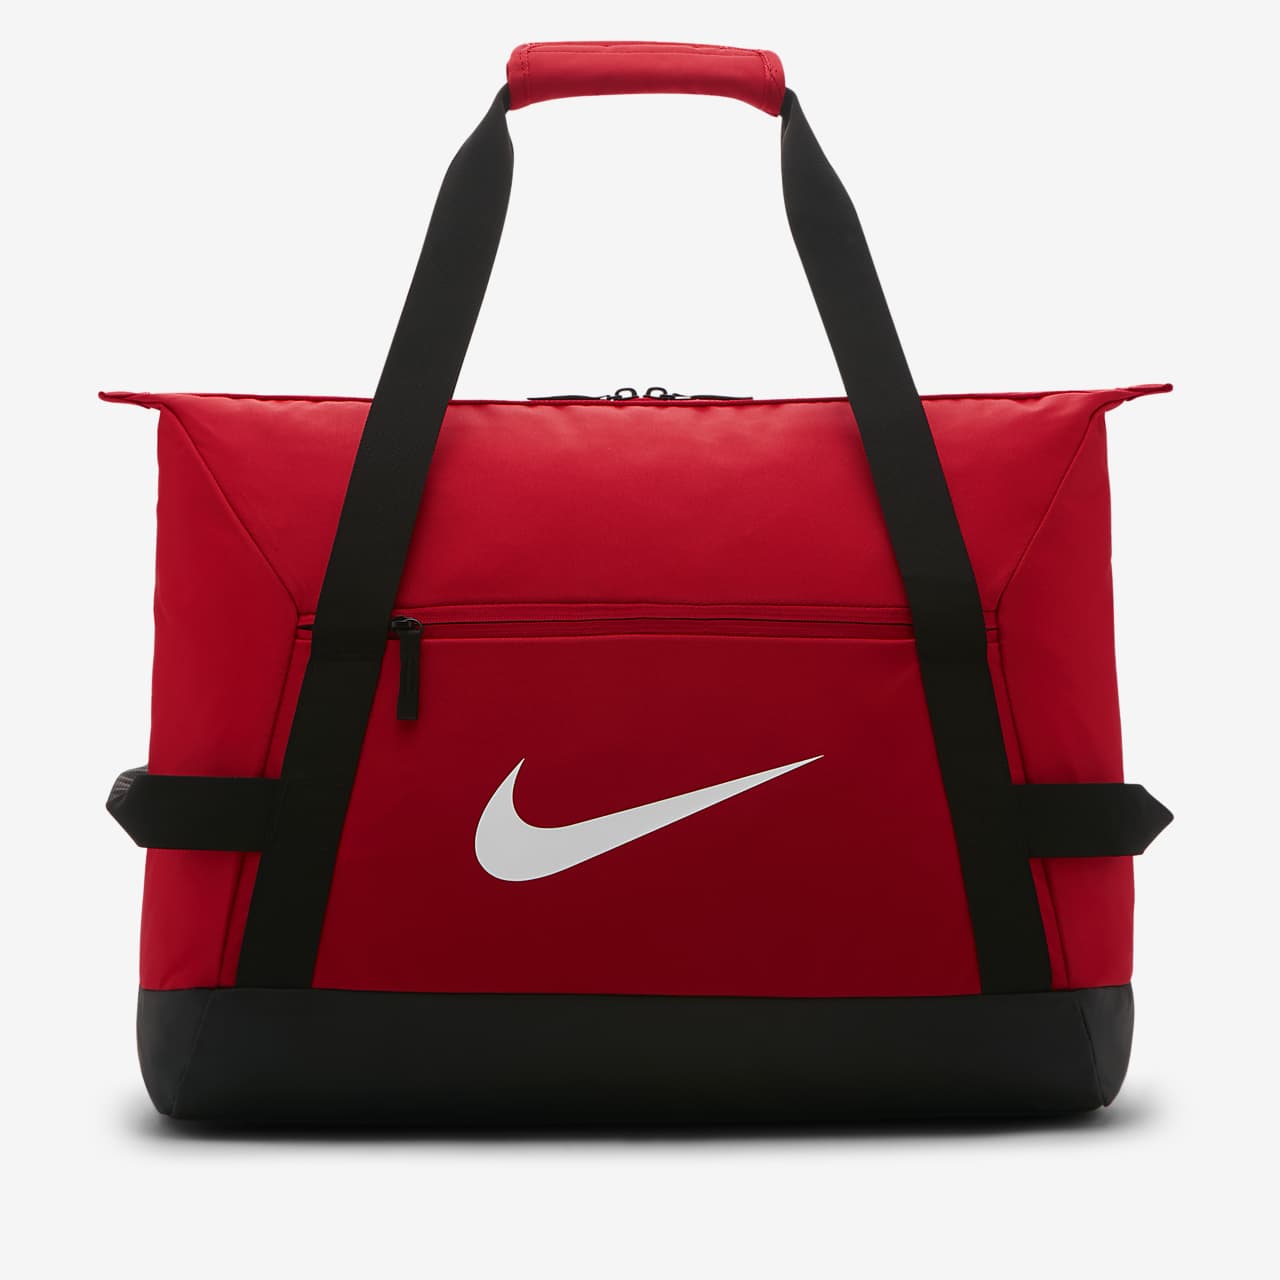 Τσάντα γυμναστηρίου για ποδόσφαιρο Nike Academy Team (μέγεθος Medium)